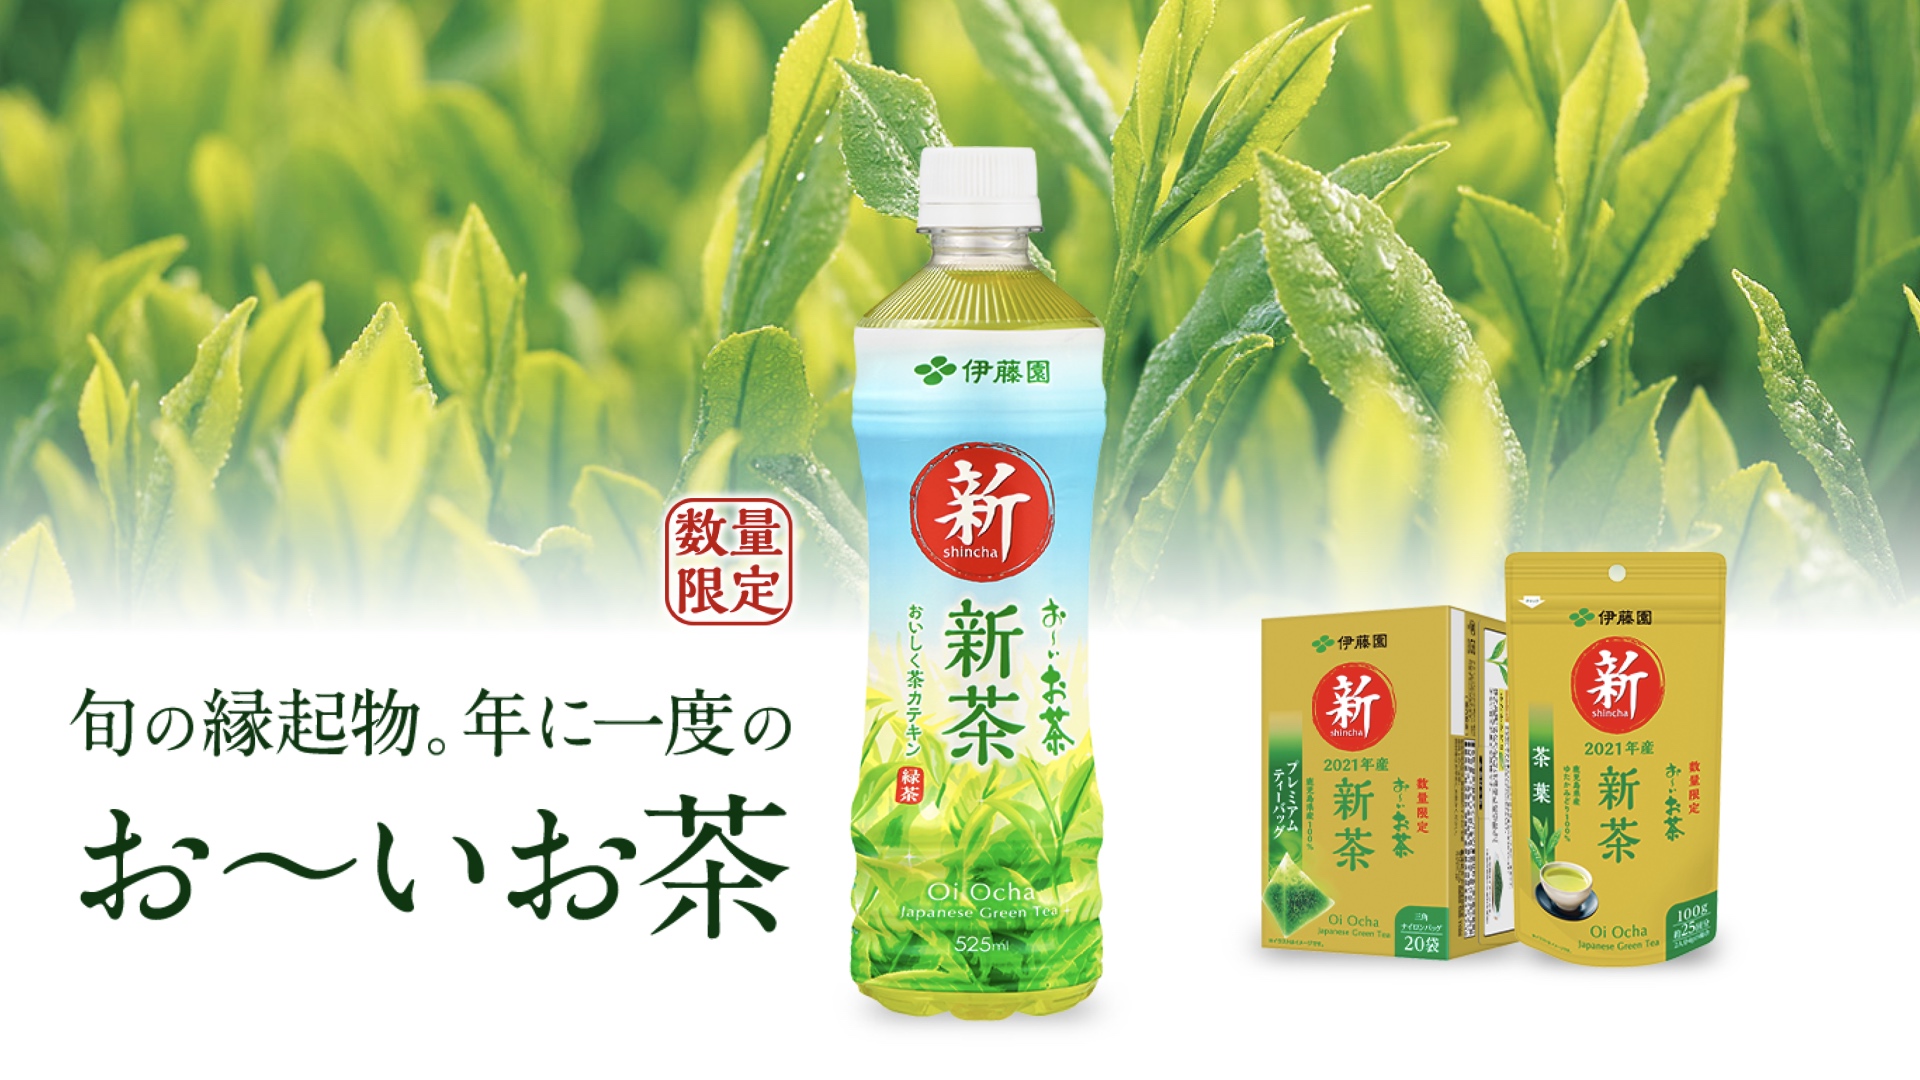 Das Shincha-Angebot des grossen Teeherstellers Itōen im Jahr 2021.